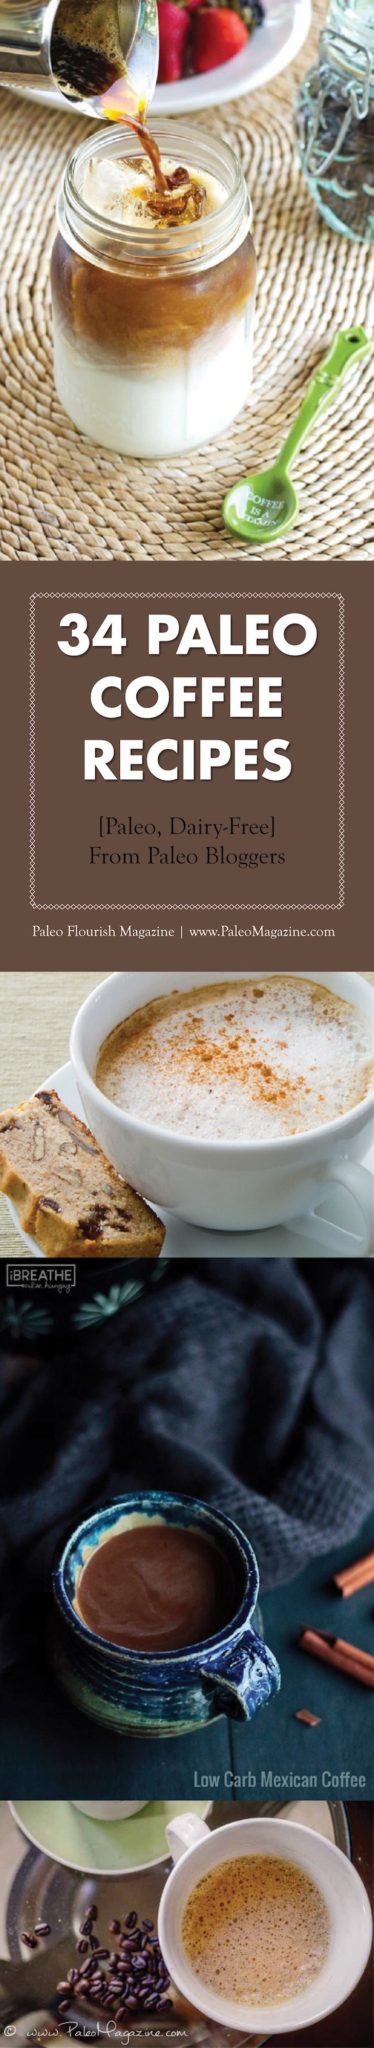 35 Paleo Coffee Recipes #paleo #coffee #recipes https://paleoflourish.com/paleo-coffee-recipes